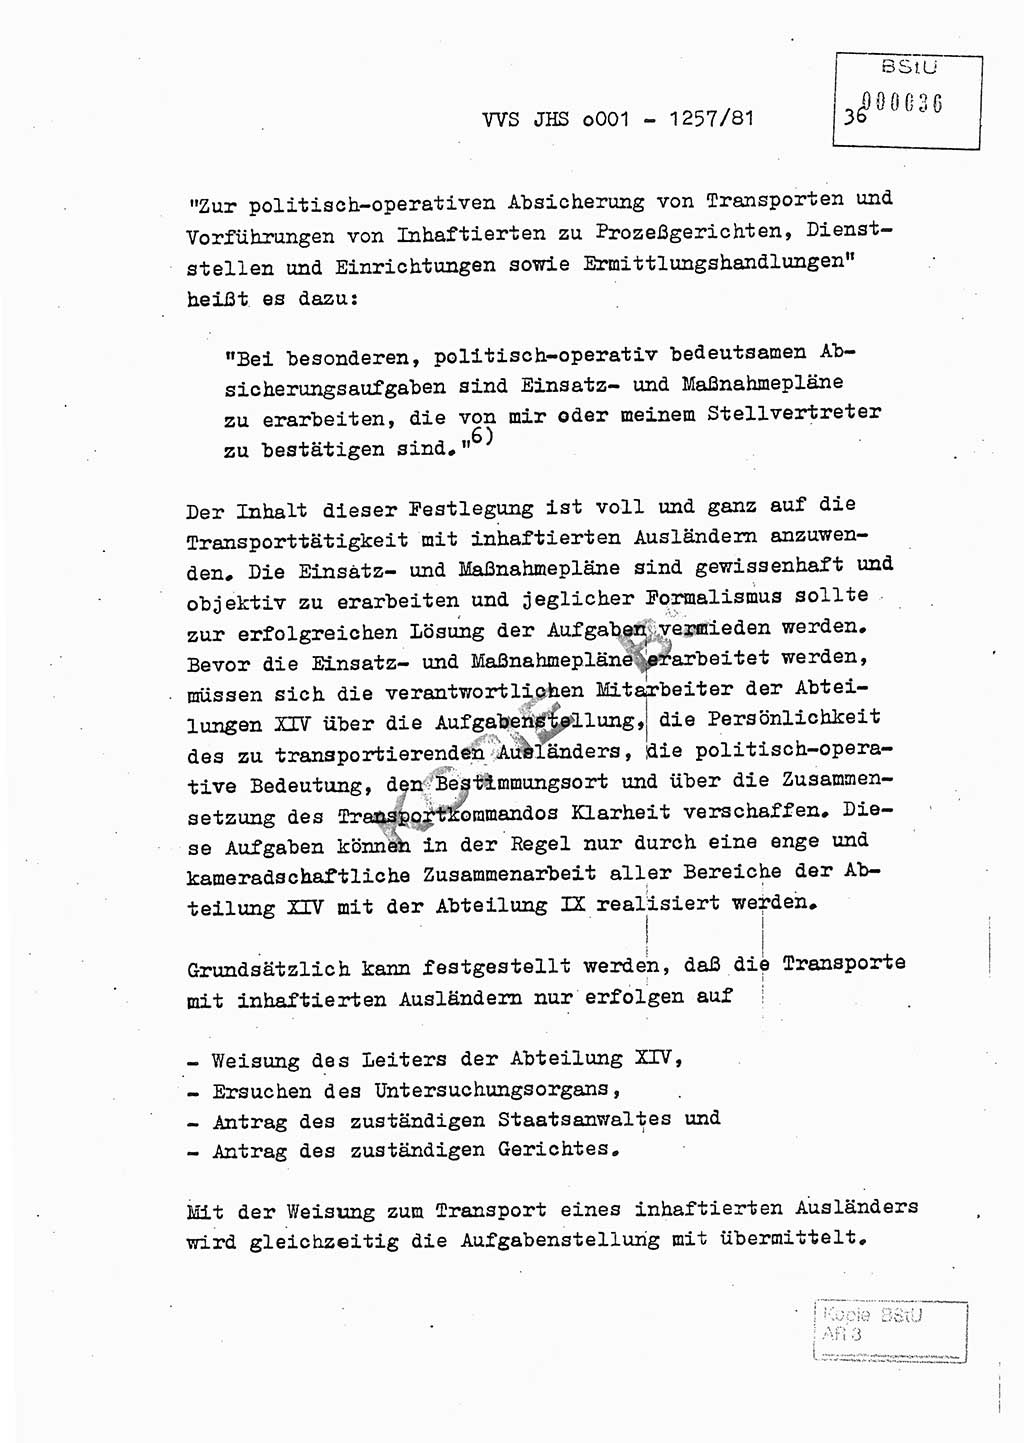 Fachschulabschlußarbeit Unterleutnant Dieter Möller (BV Rst. Abt. ⅩⅣ), Ministerium für Staatssicherheit (MfS) [Deutsche Demokratische Republik (DDR)], Juristische Hochschule (JHS), Vertrauliche Verschlußsache (VVS) o001-1257/81, Potsdam 1982, Seite 36 (FS-Abschl.-Arb. MfS DDR JHS VVS o001-1257/81 1982, S. 36)